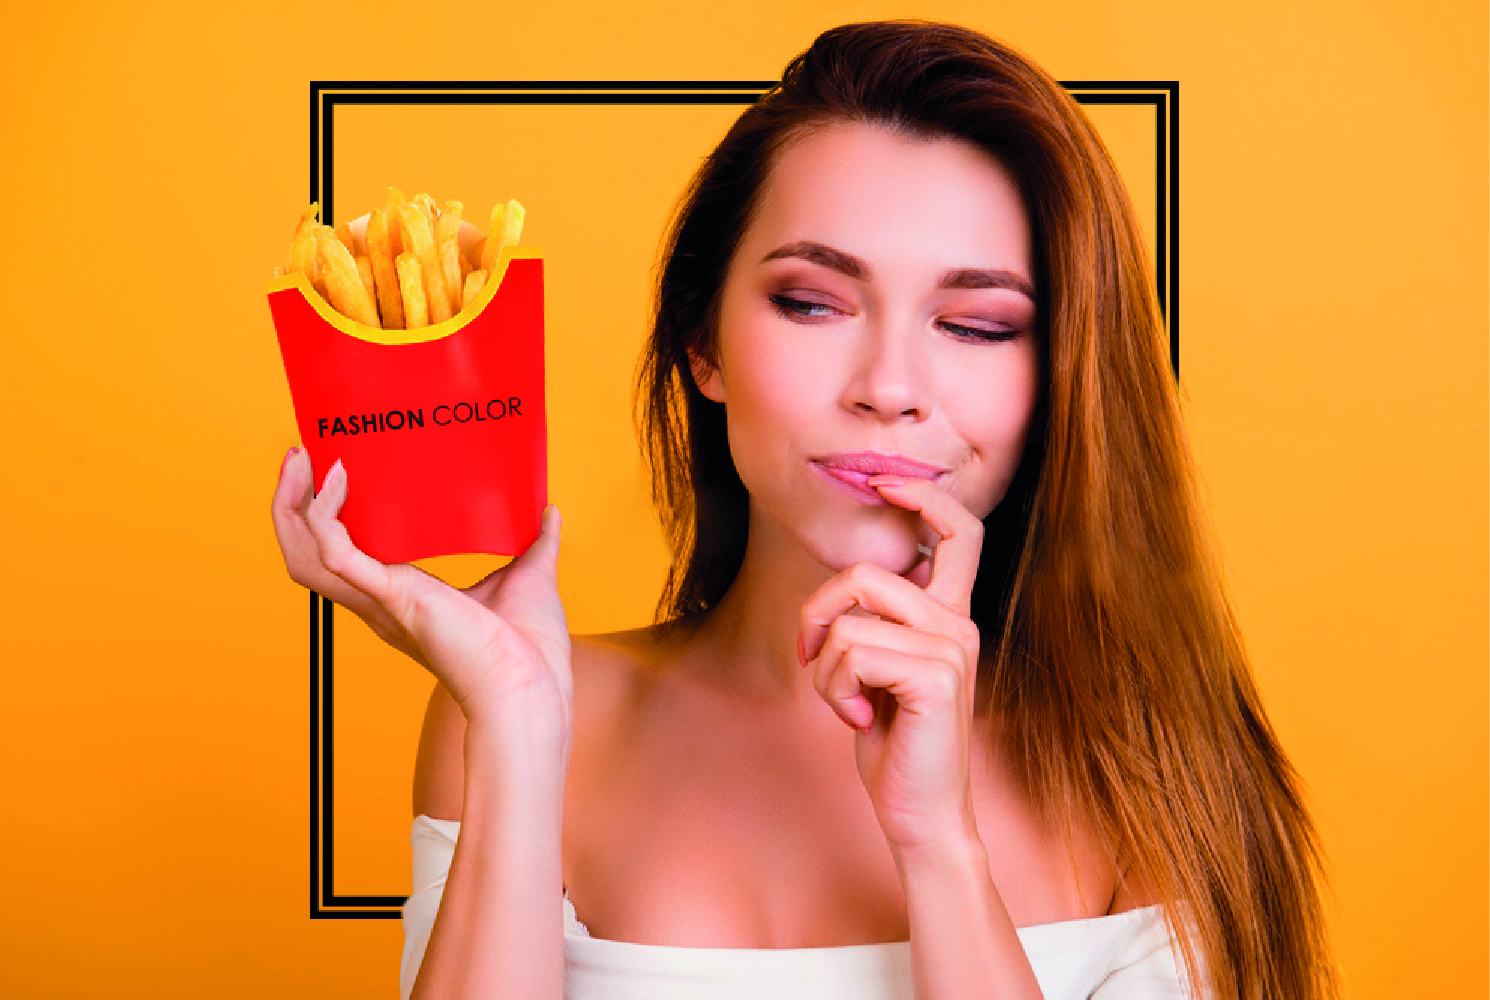 Le patatine fritte di McDonald’s aiuterebbero la ricrescita capelli